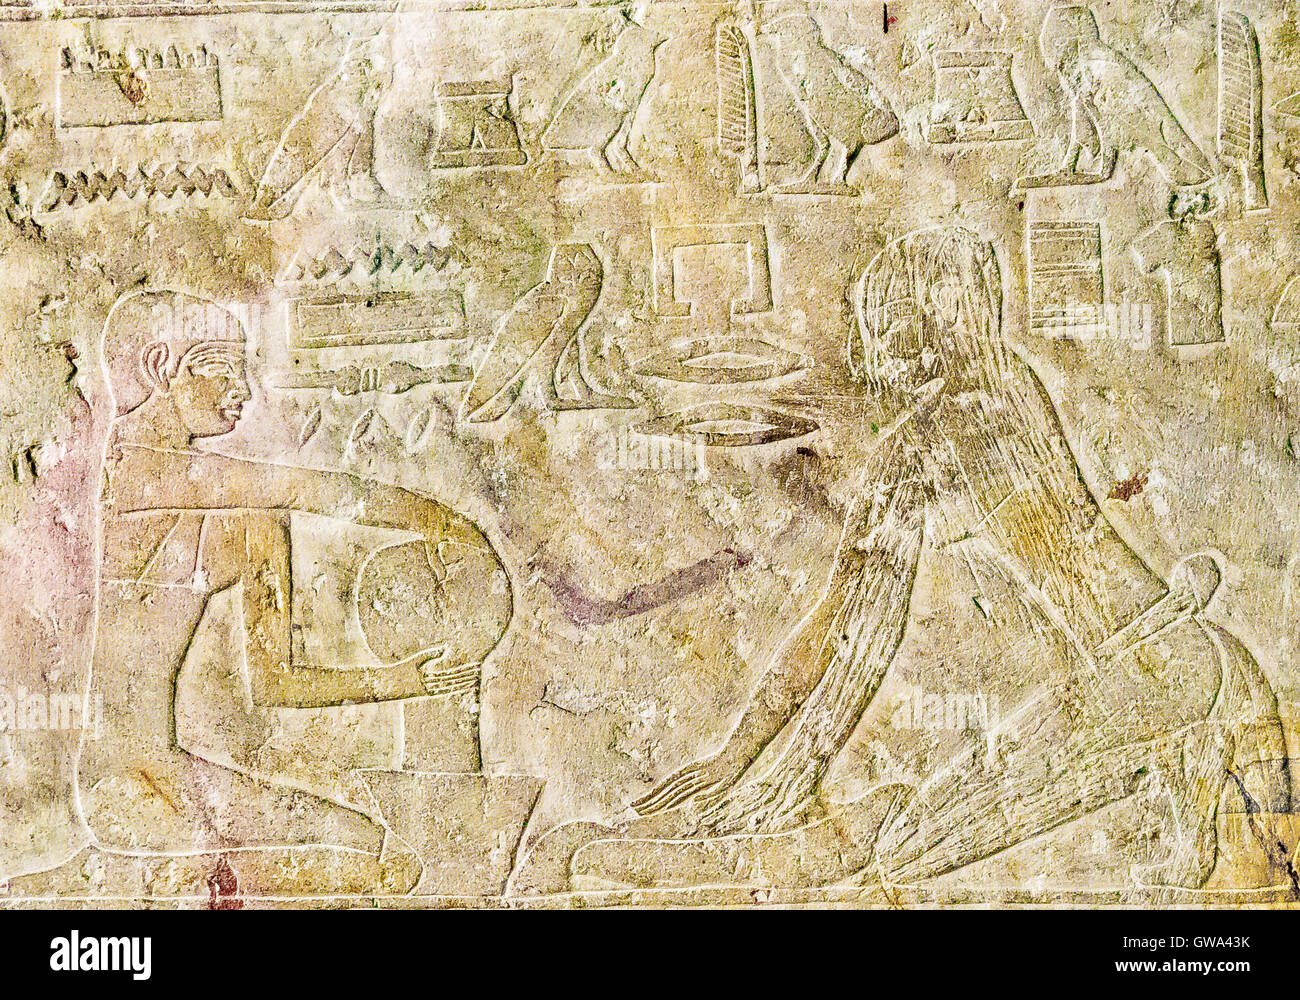 Egipto, El Cairo, Museo Egipcio, desde la tumba de Kaemrehu, Saqqara, detalle de un gran alivio representando escenas agrícolas. Foto de stock